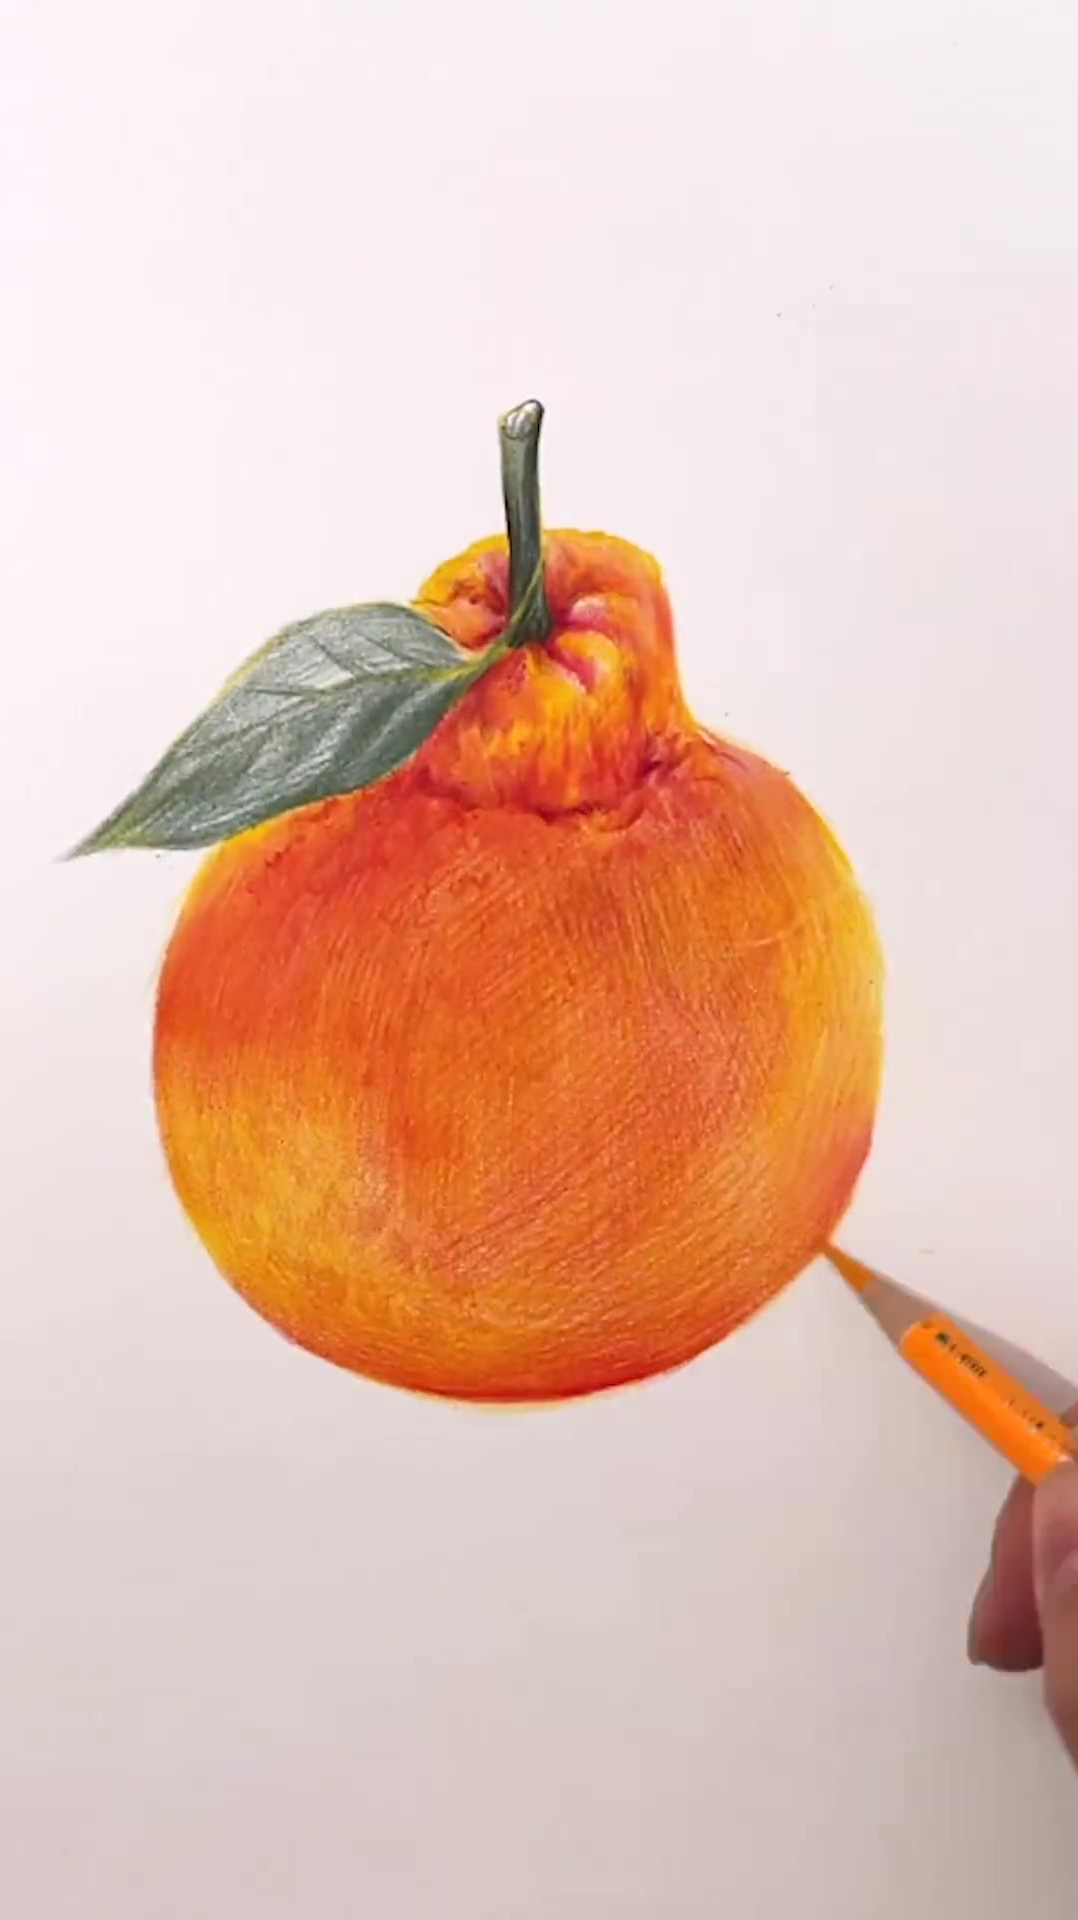 彩铅画你们知道丑橘的别名吗